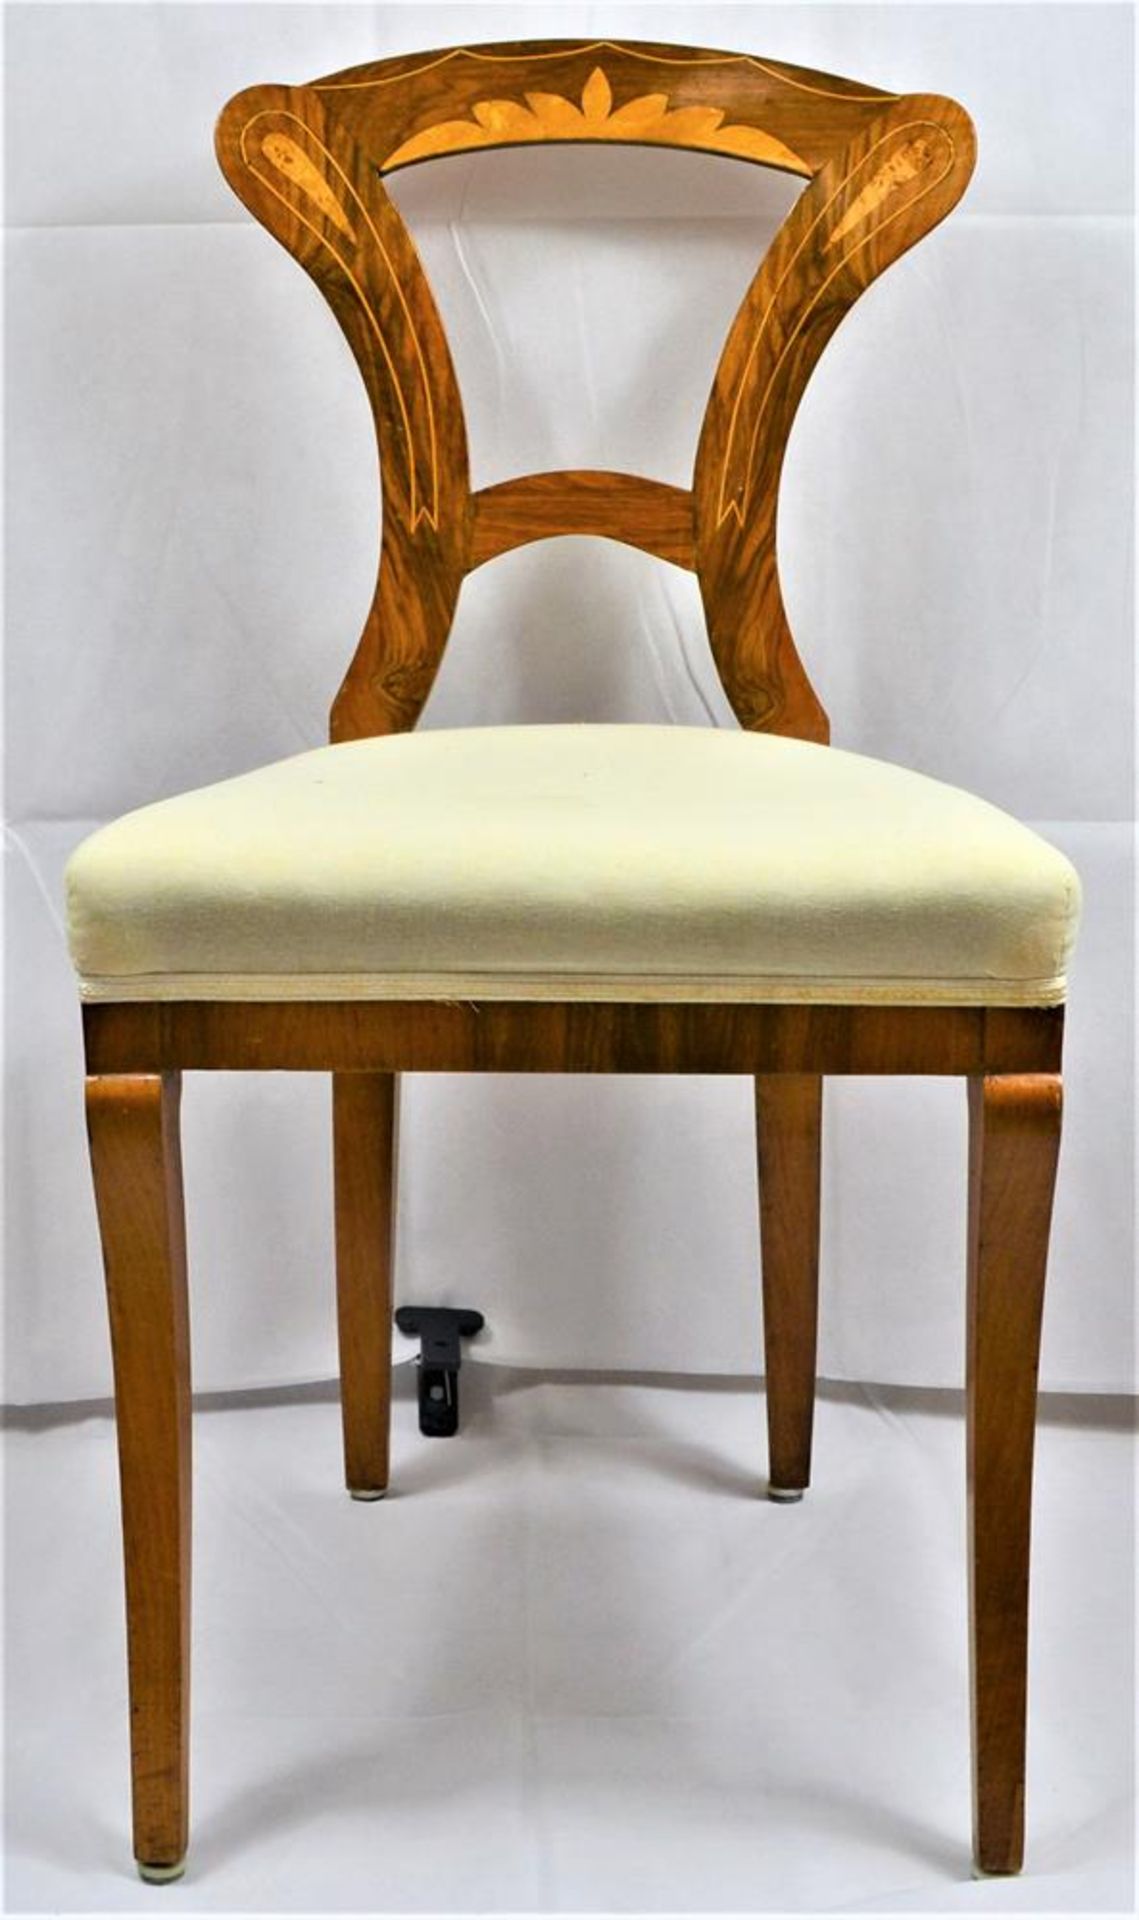 6 Biedermeier Stühle mit Intarsien, bei einem Rückenlehne stark beschädigt, Bezüge teilweise